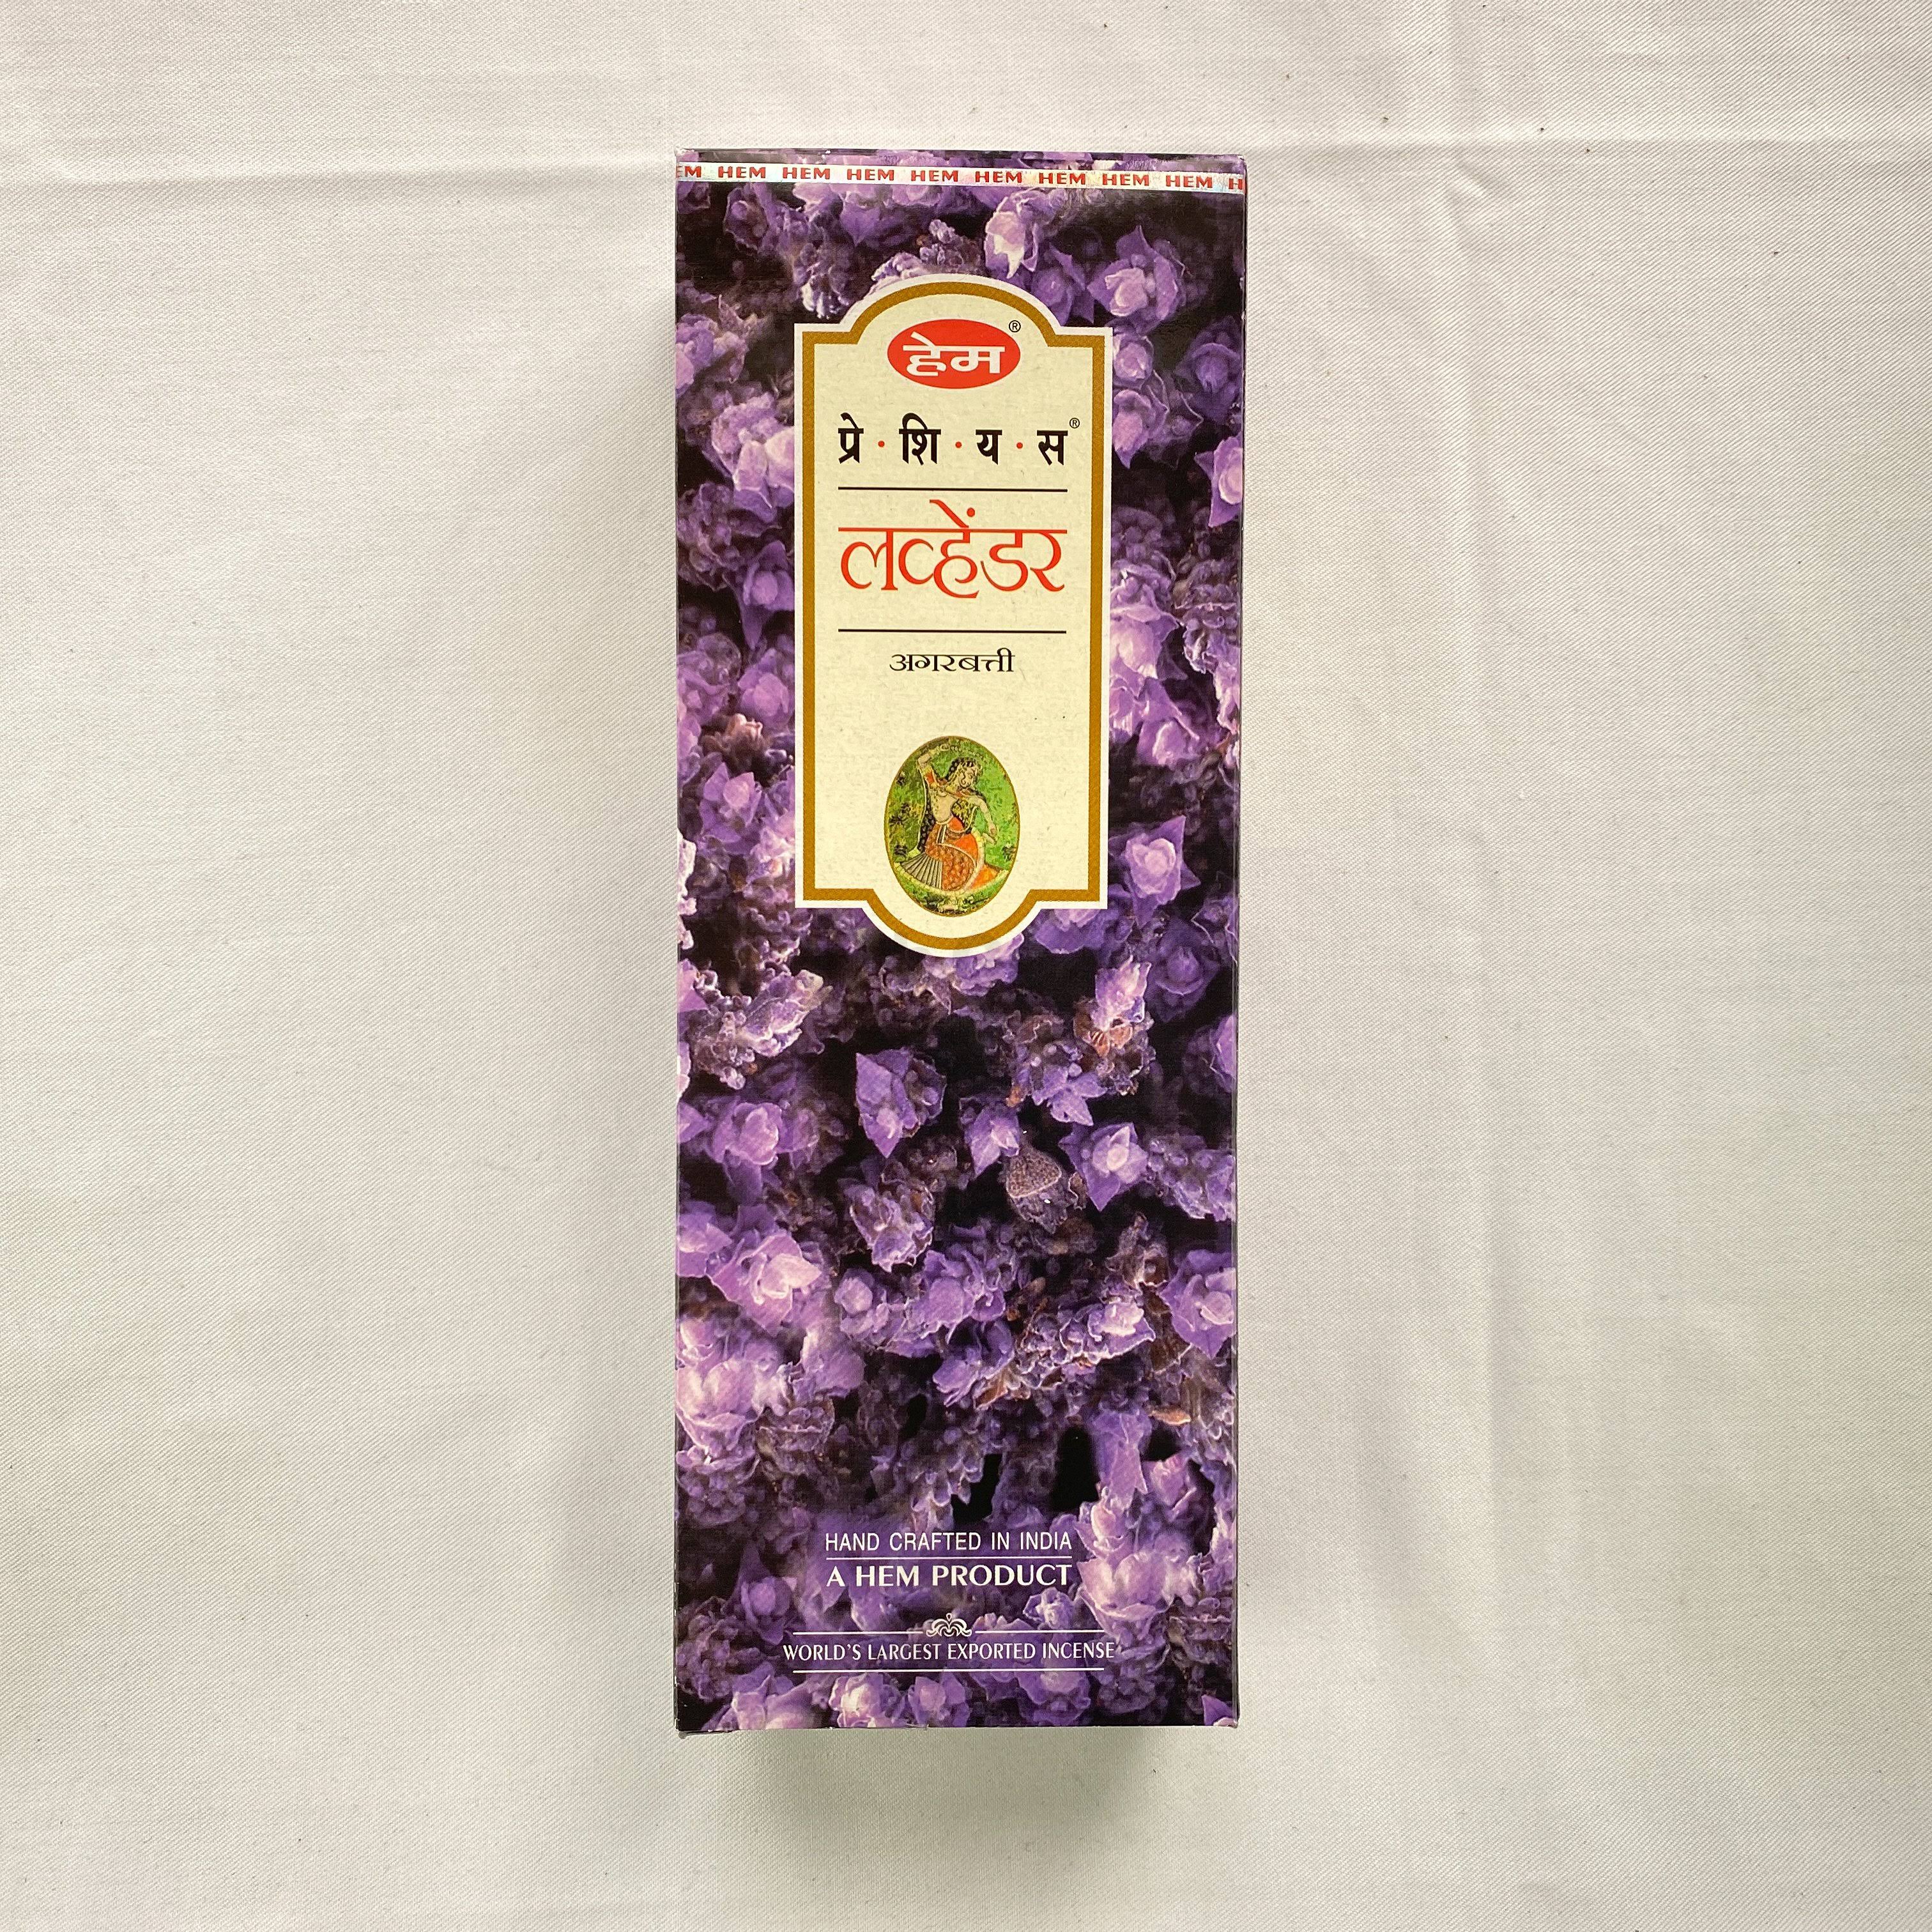 Hem Lavender Incense Sticks - 120ct